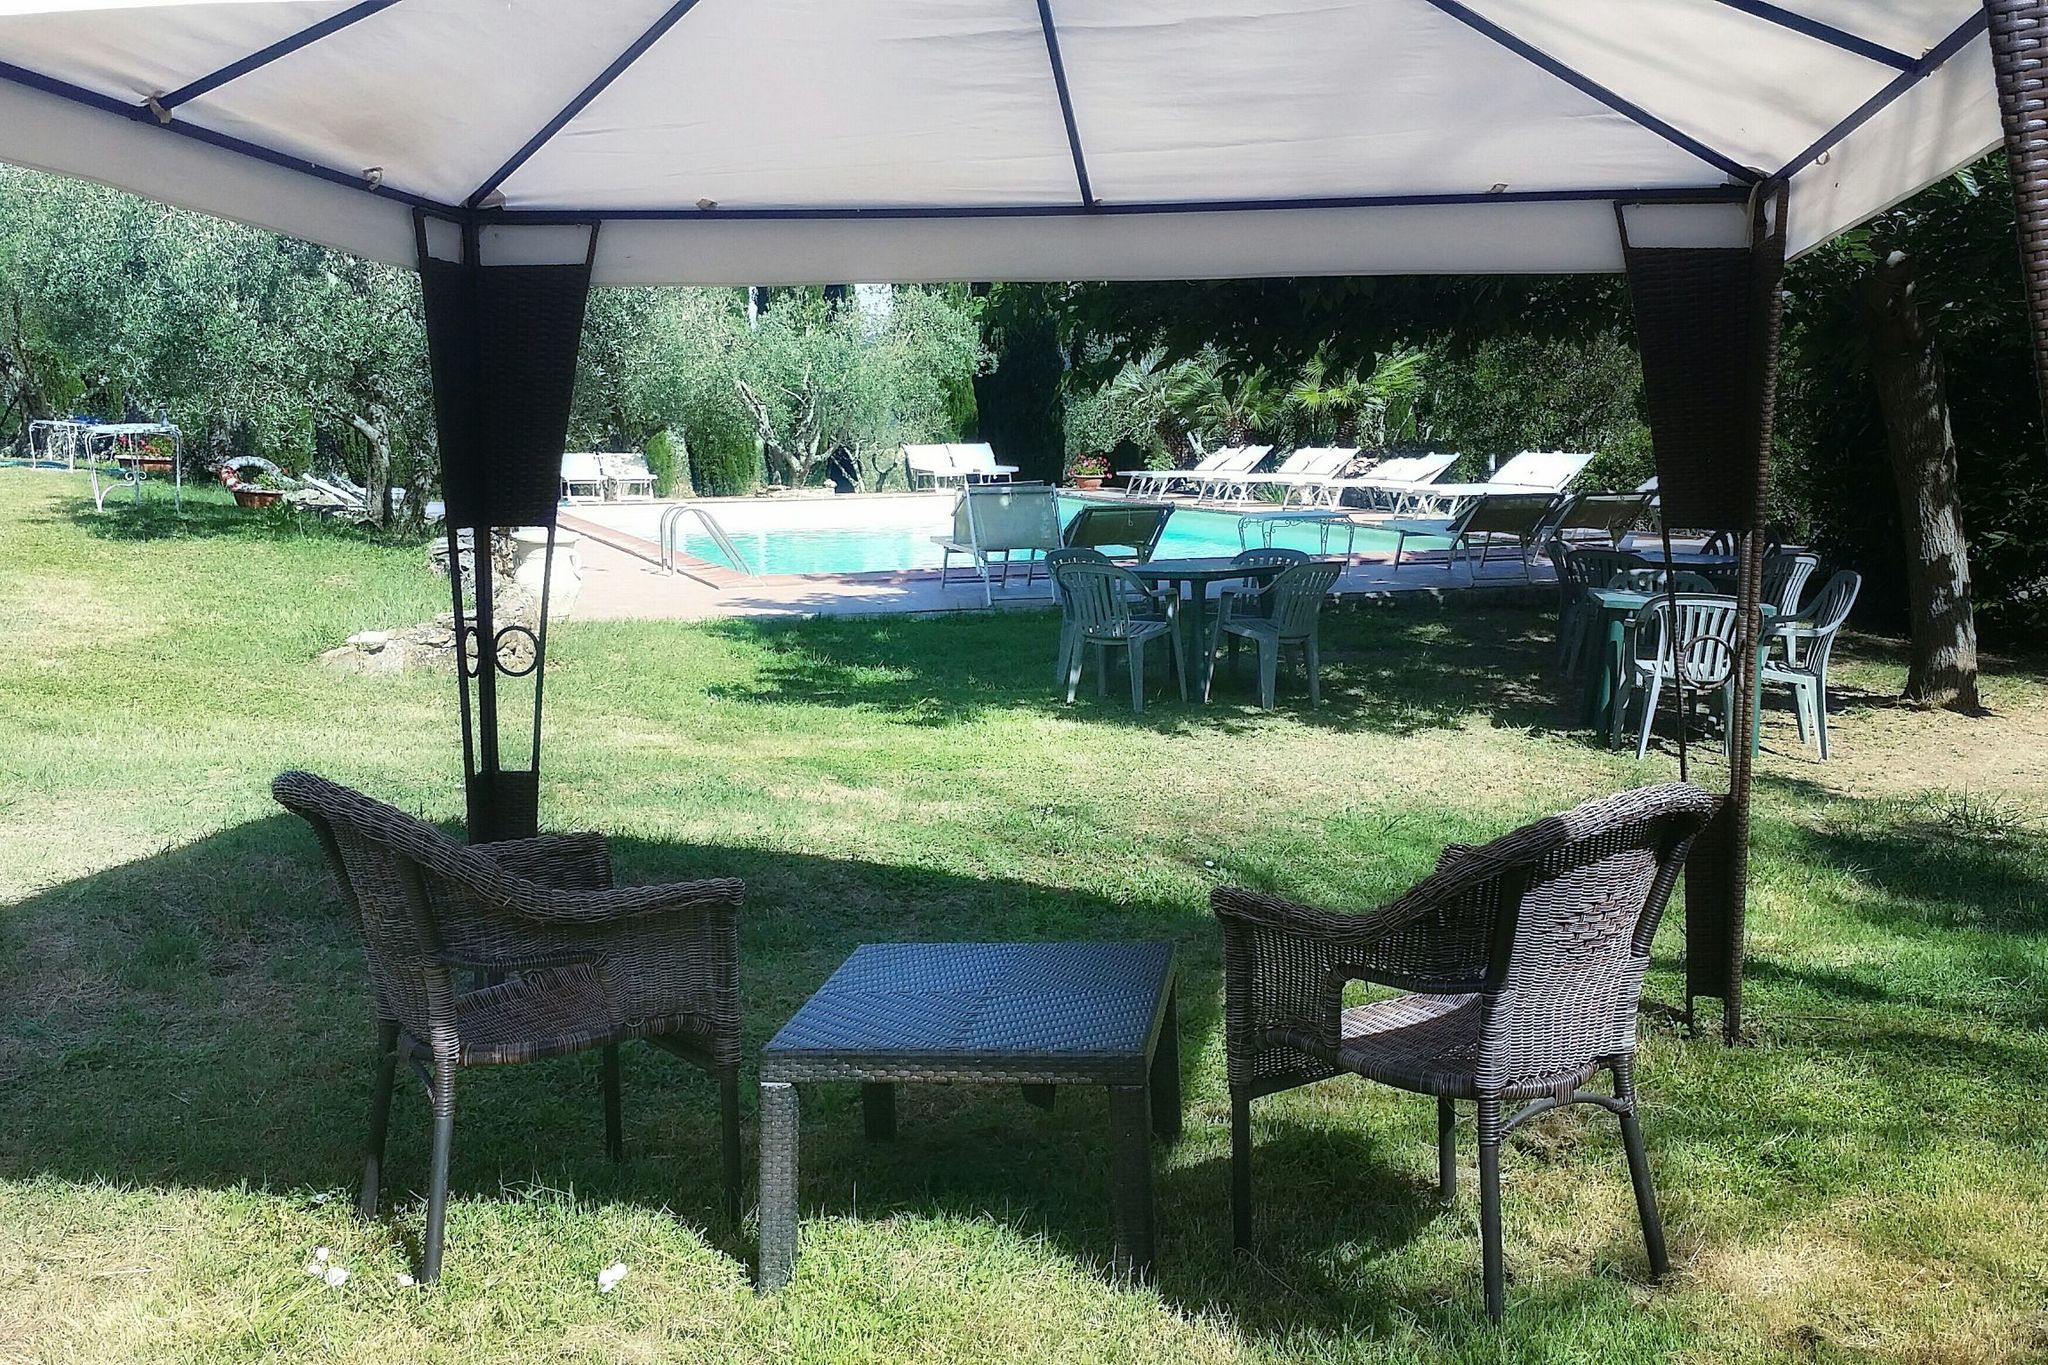 Maison de vacances typique avec piscine à Sasso Pisano